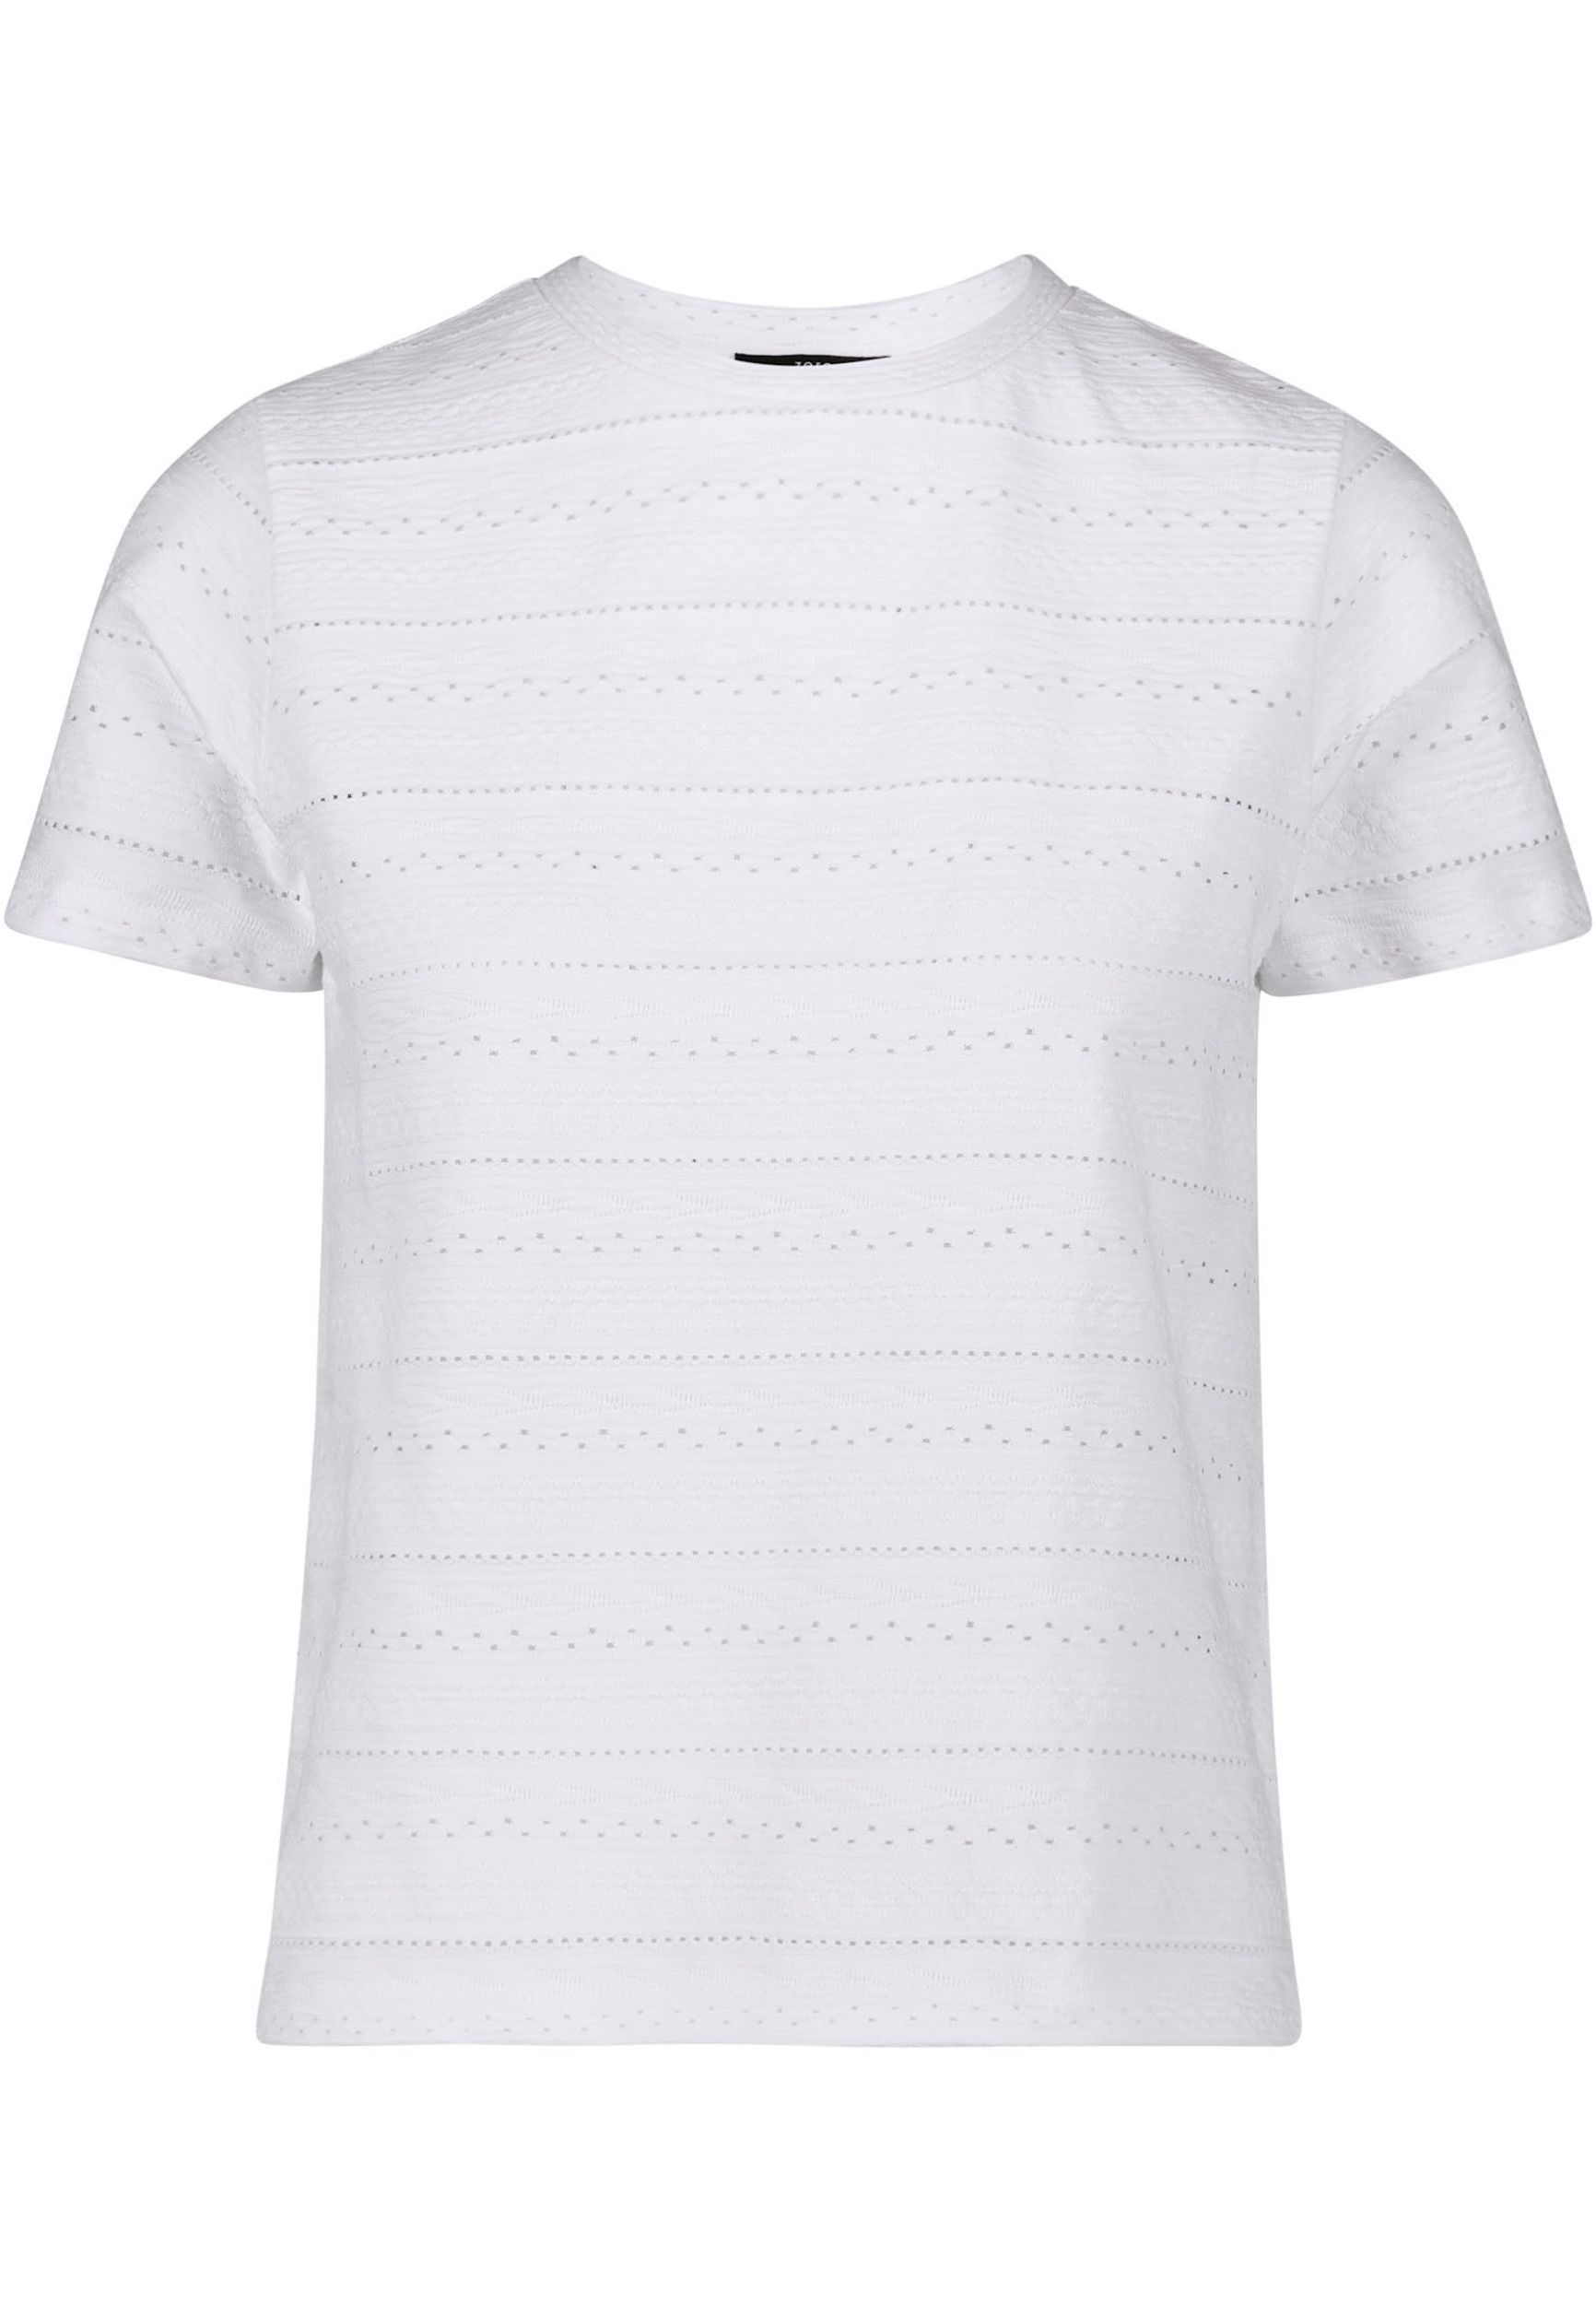 Zero |  Zero Shirt  | 44 | brilliant white